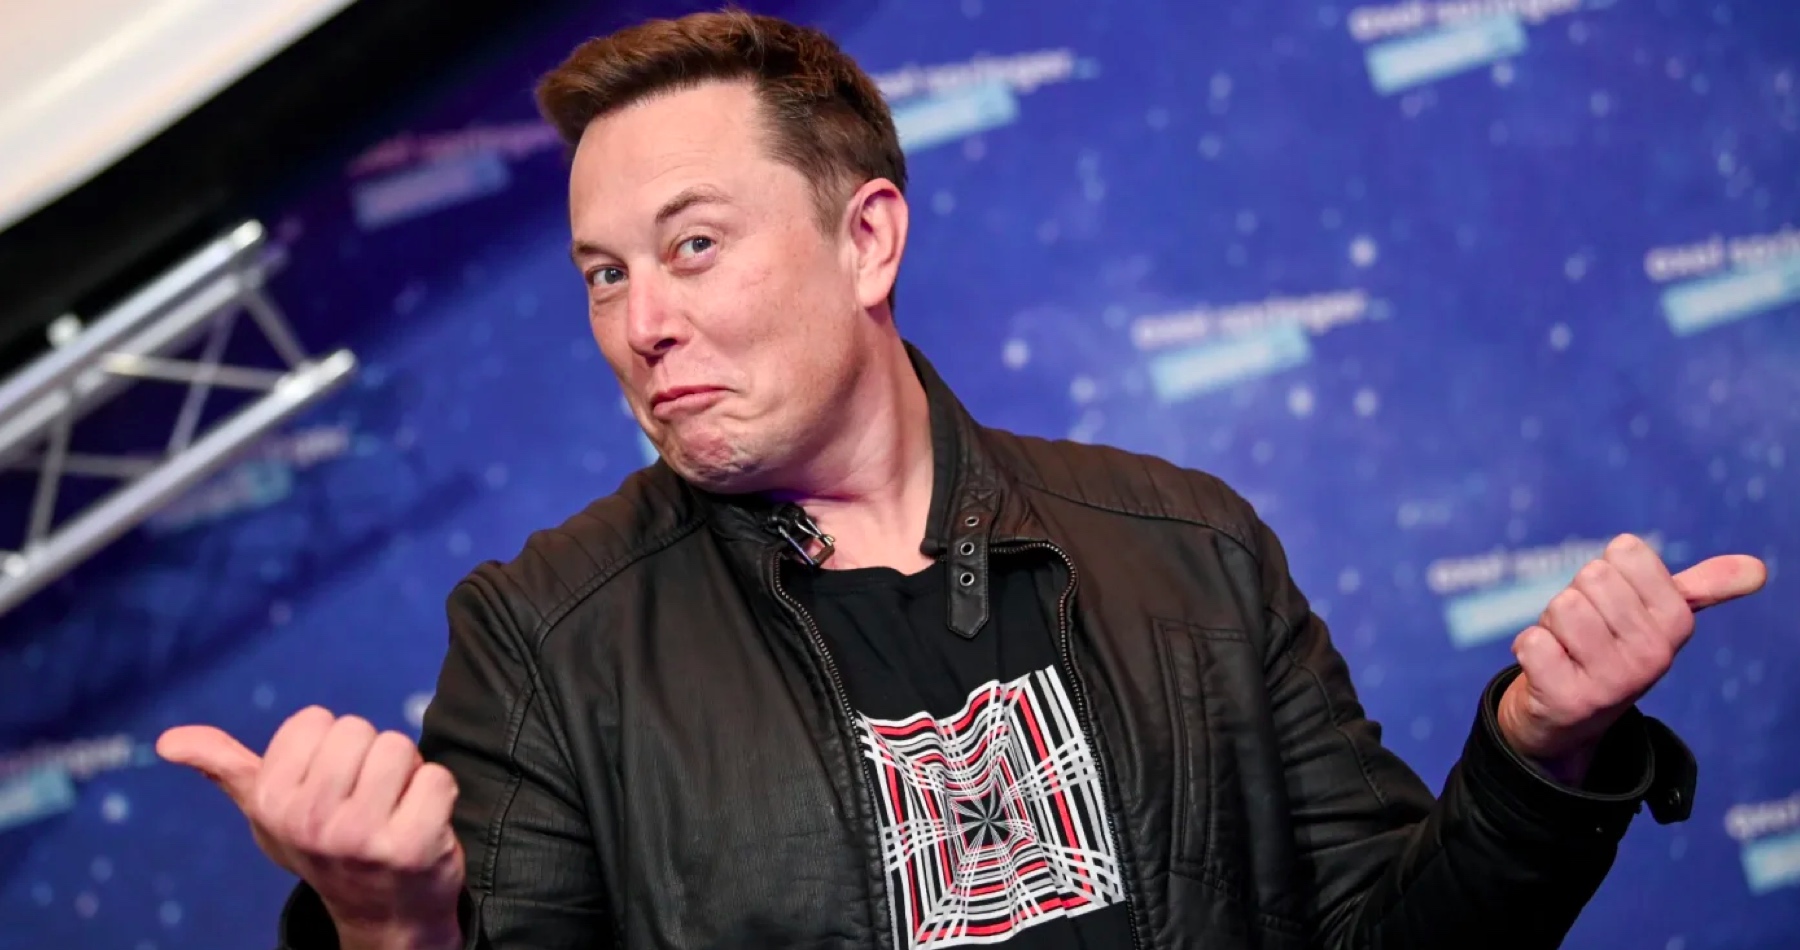 Progresivisté vedou podle Elona Muska náš svět do záhuby: „Woke virus důkladně pronikl do zábavy a tlačí civilizaci směrem k sebevraždě. Musí existovat protipříběh“